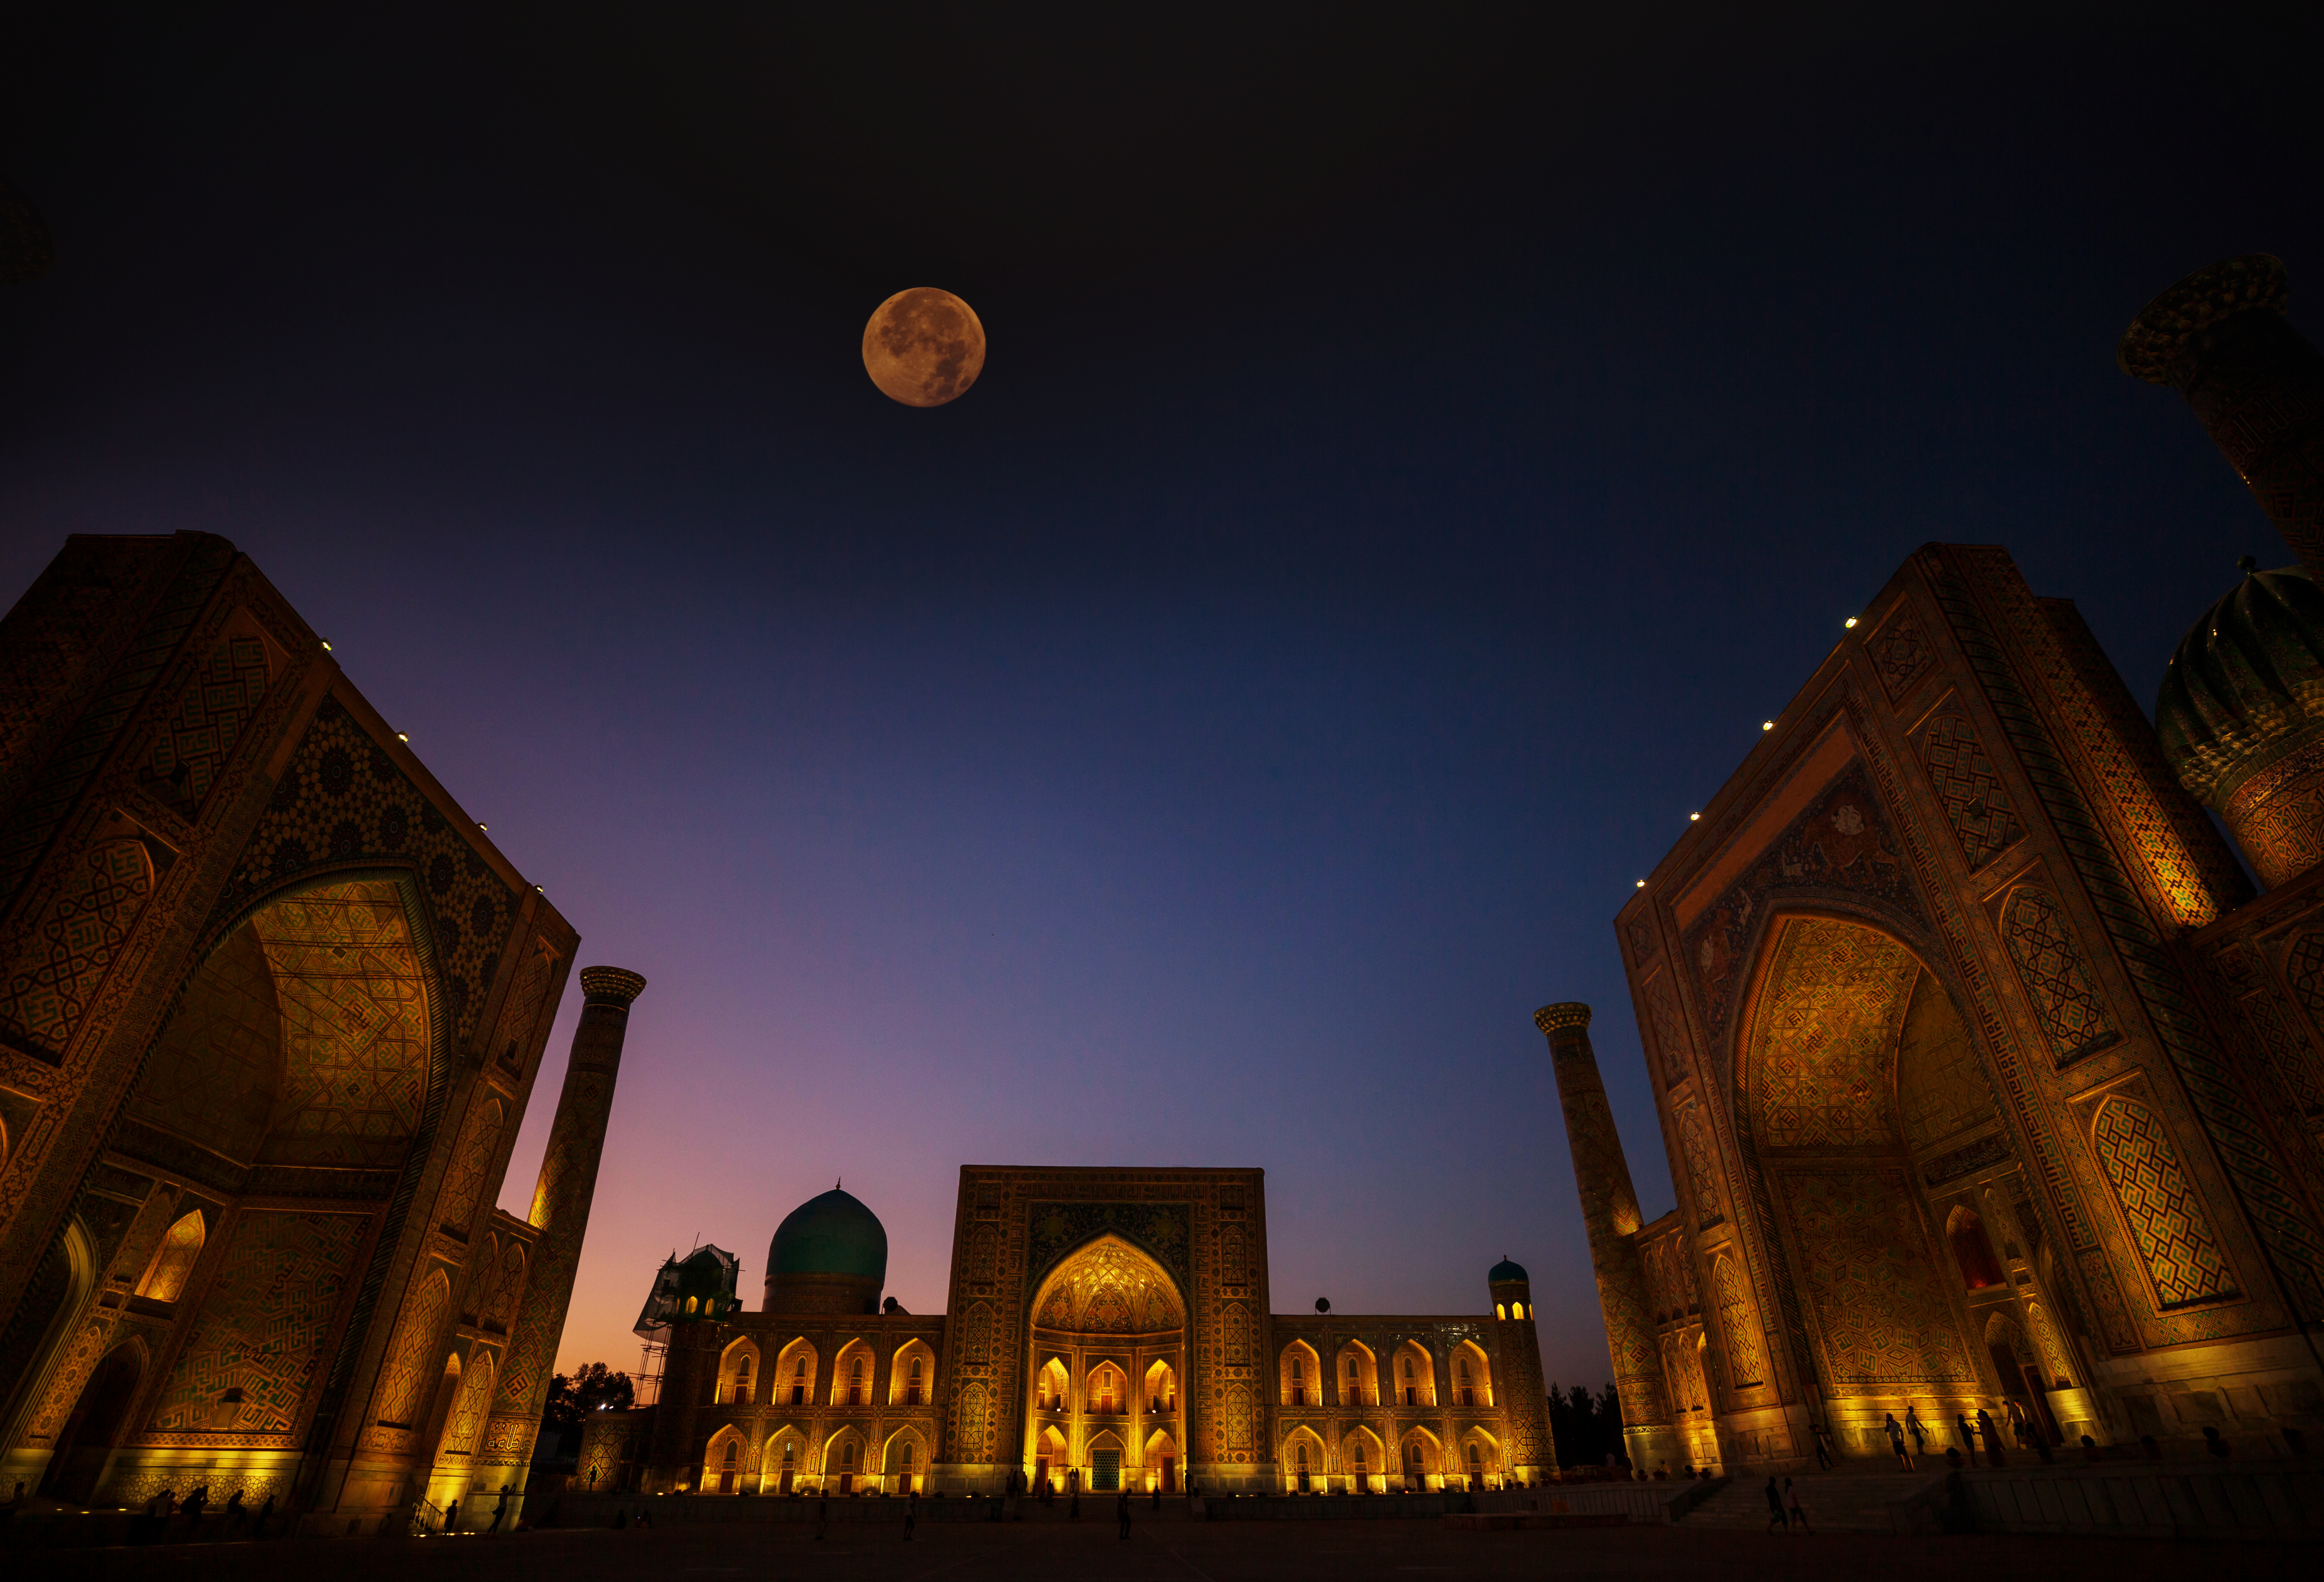 The Registan by night © high fliers / Shutterstock